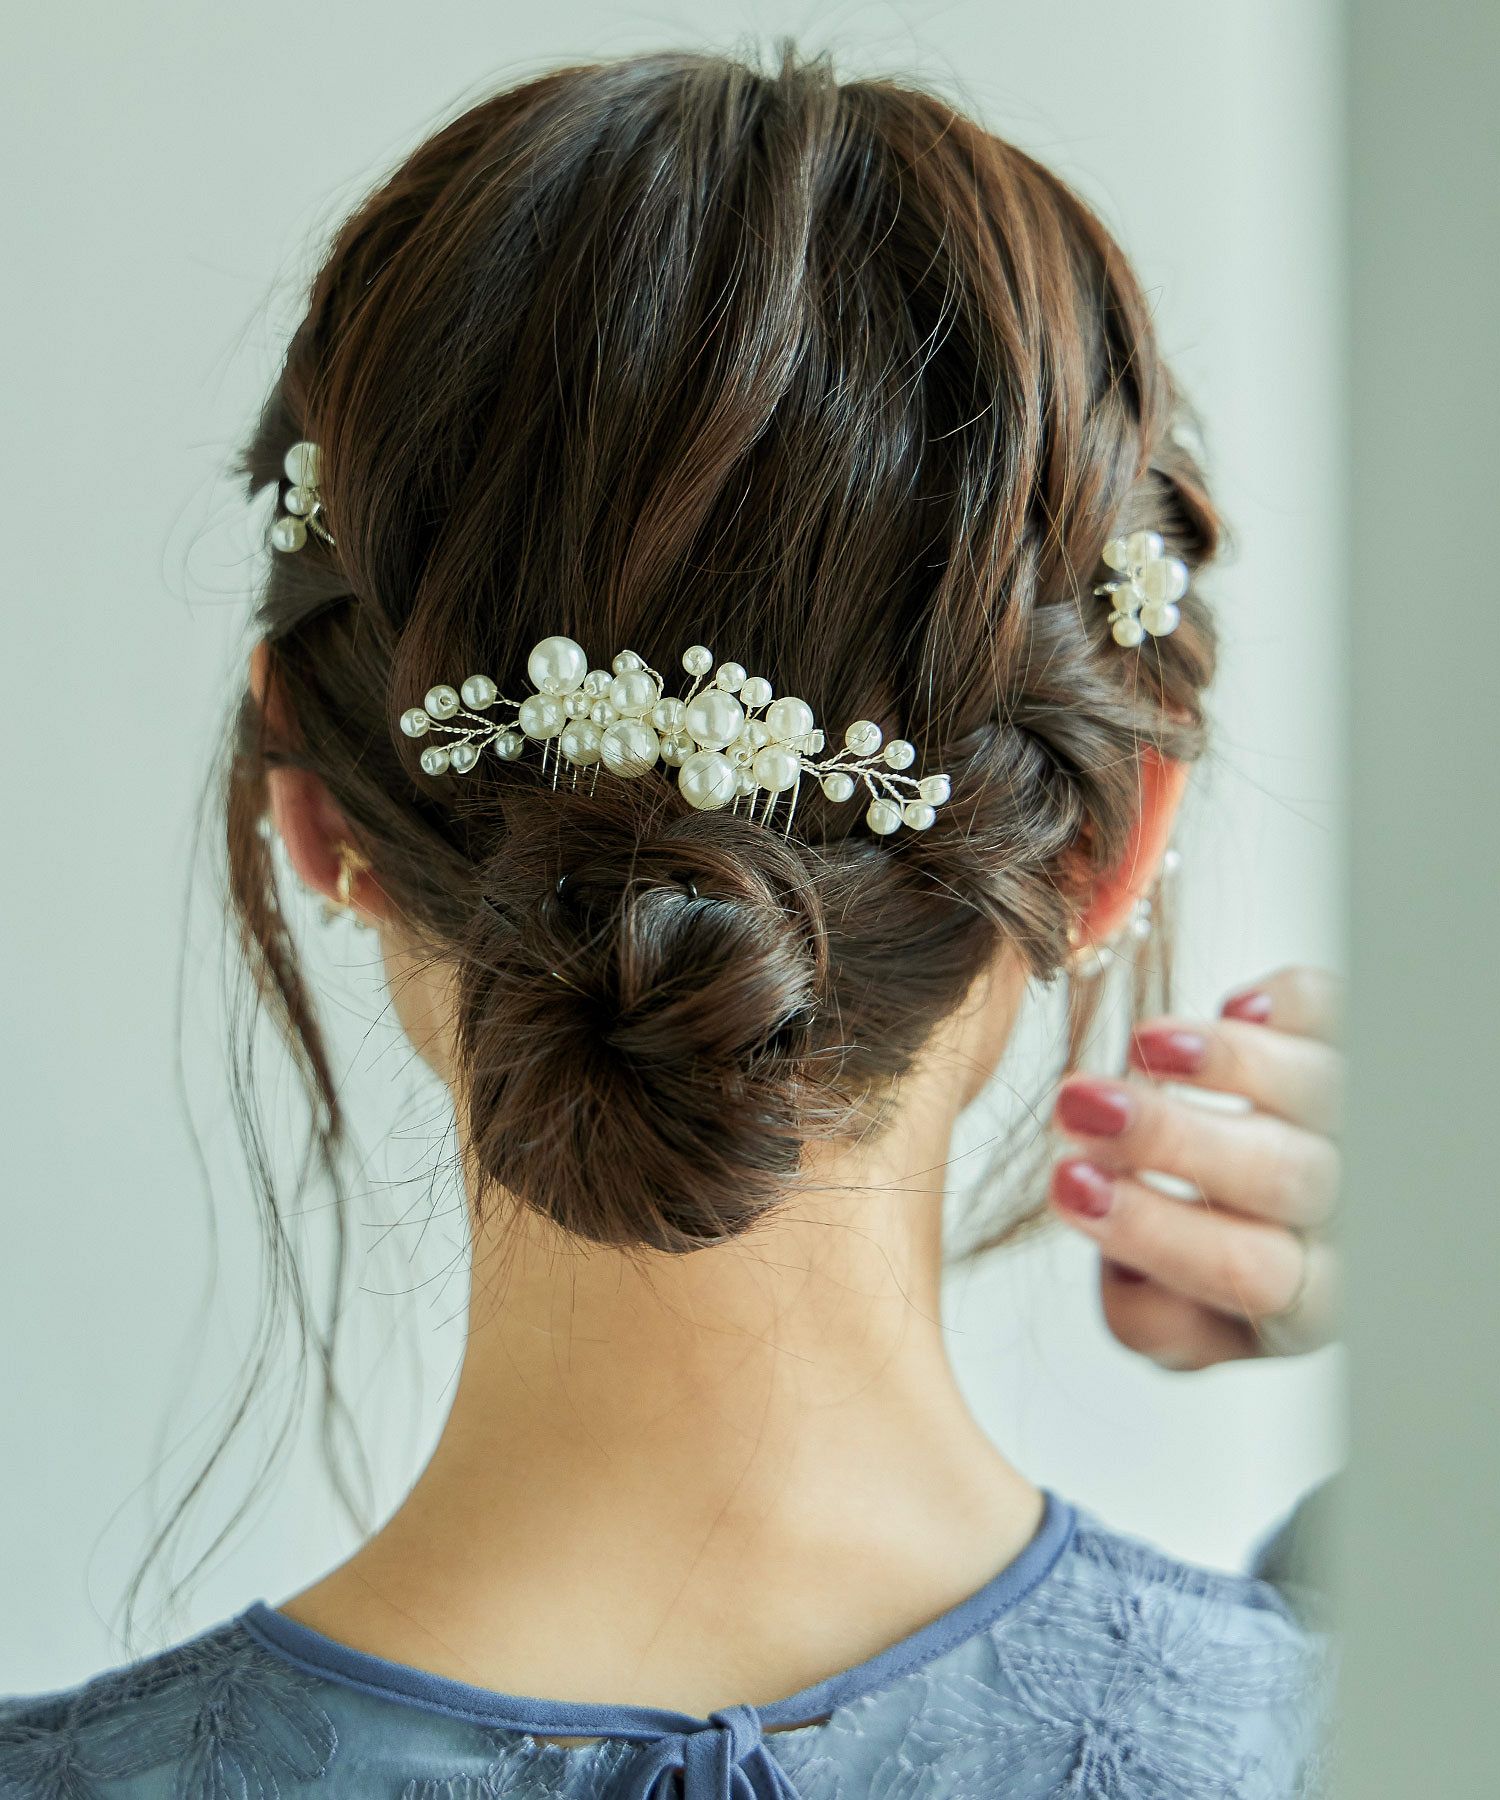 NO.Ｕ-66 レトロなお花の髪飾り ホワイトブラックＵピン 7本セット